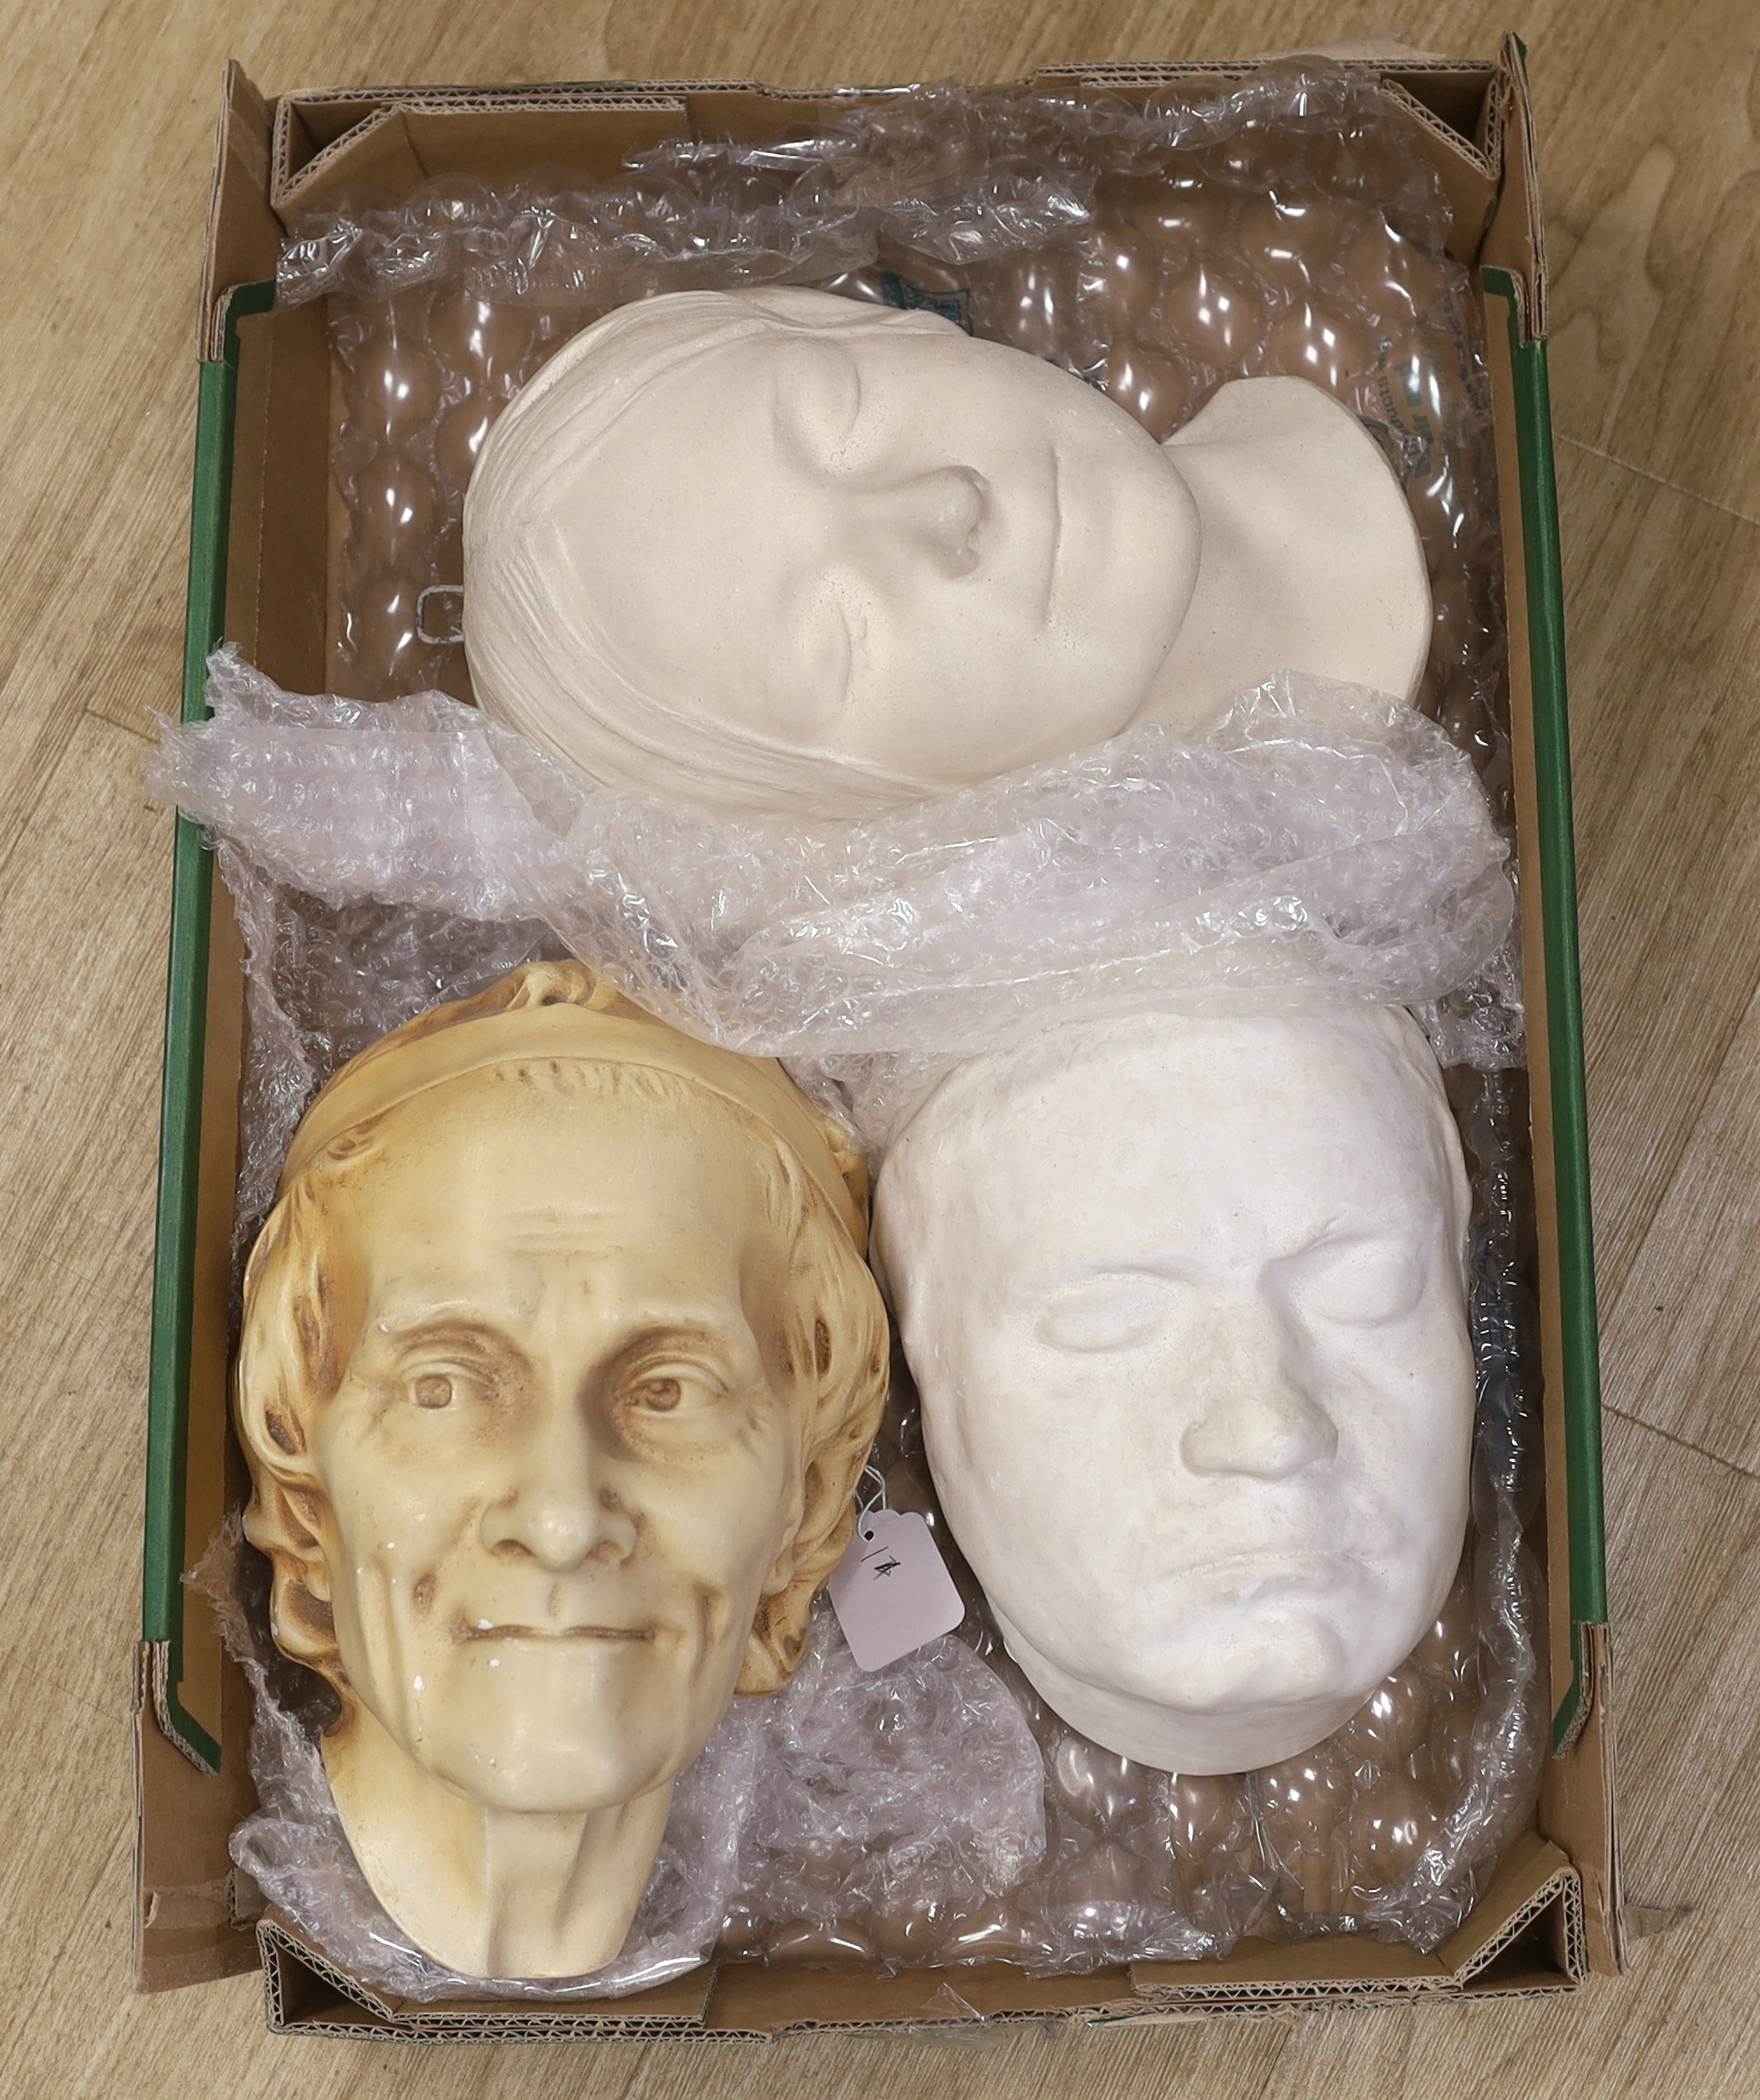 Three plaster death masks